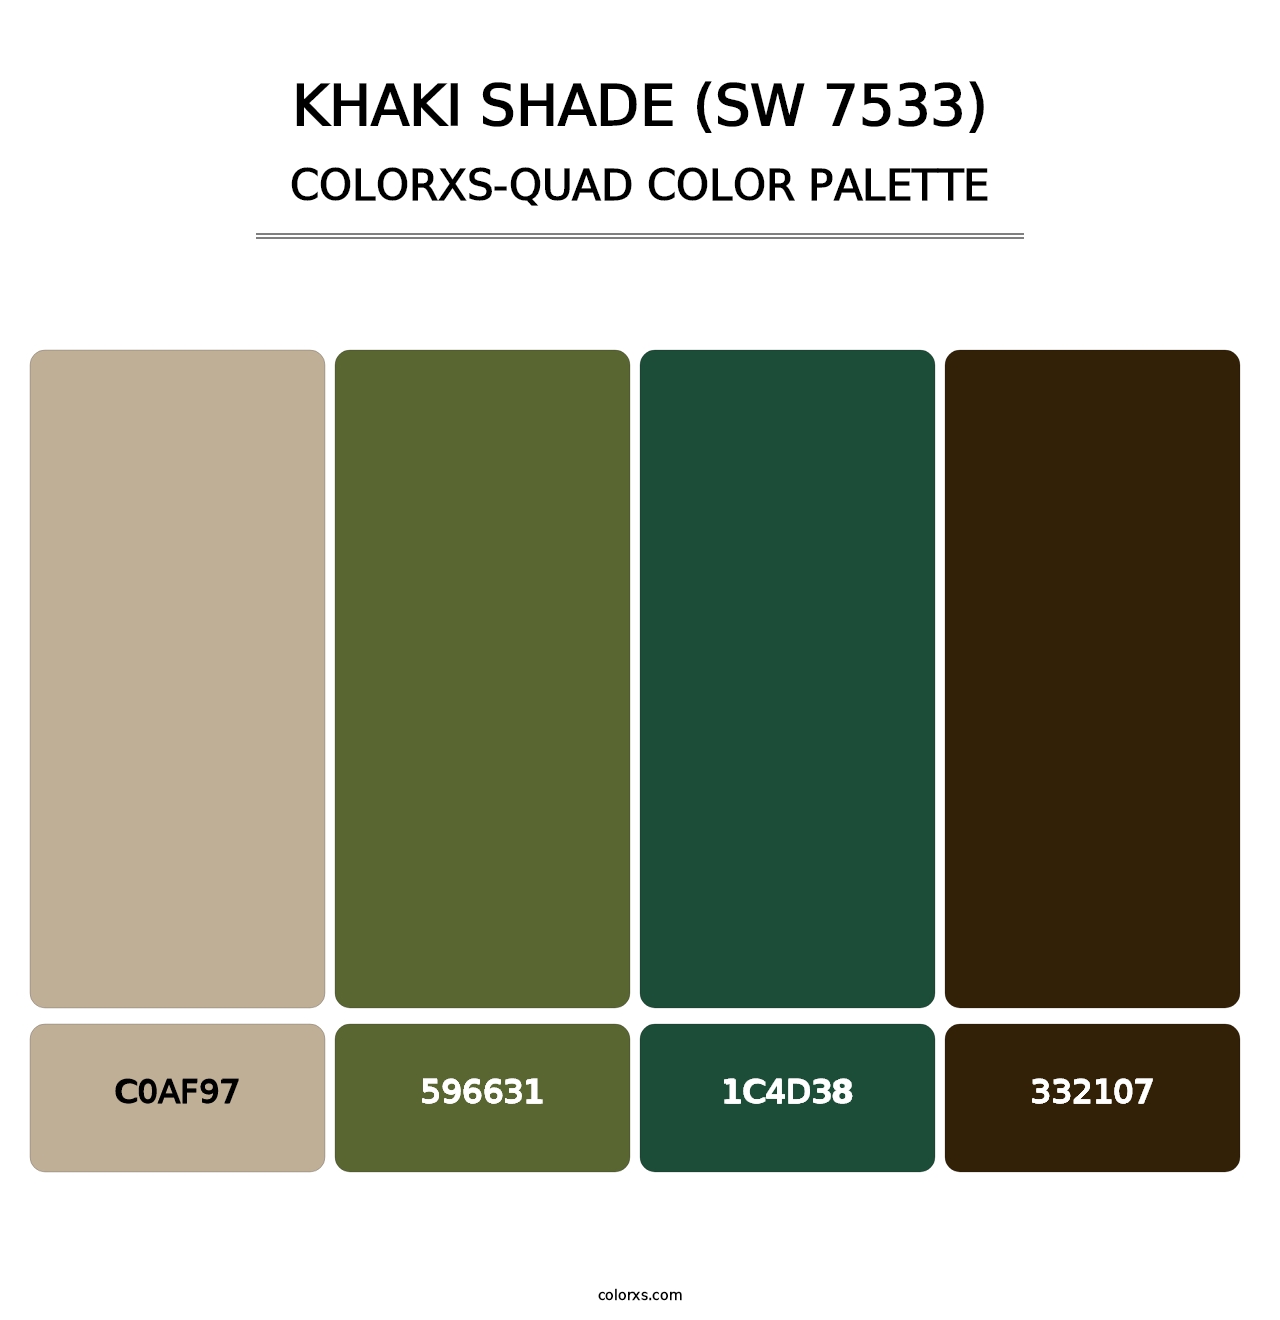 Khaki Shade (SW 7533) - Colorxs Quad Palette